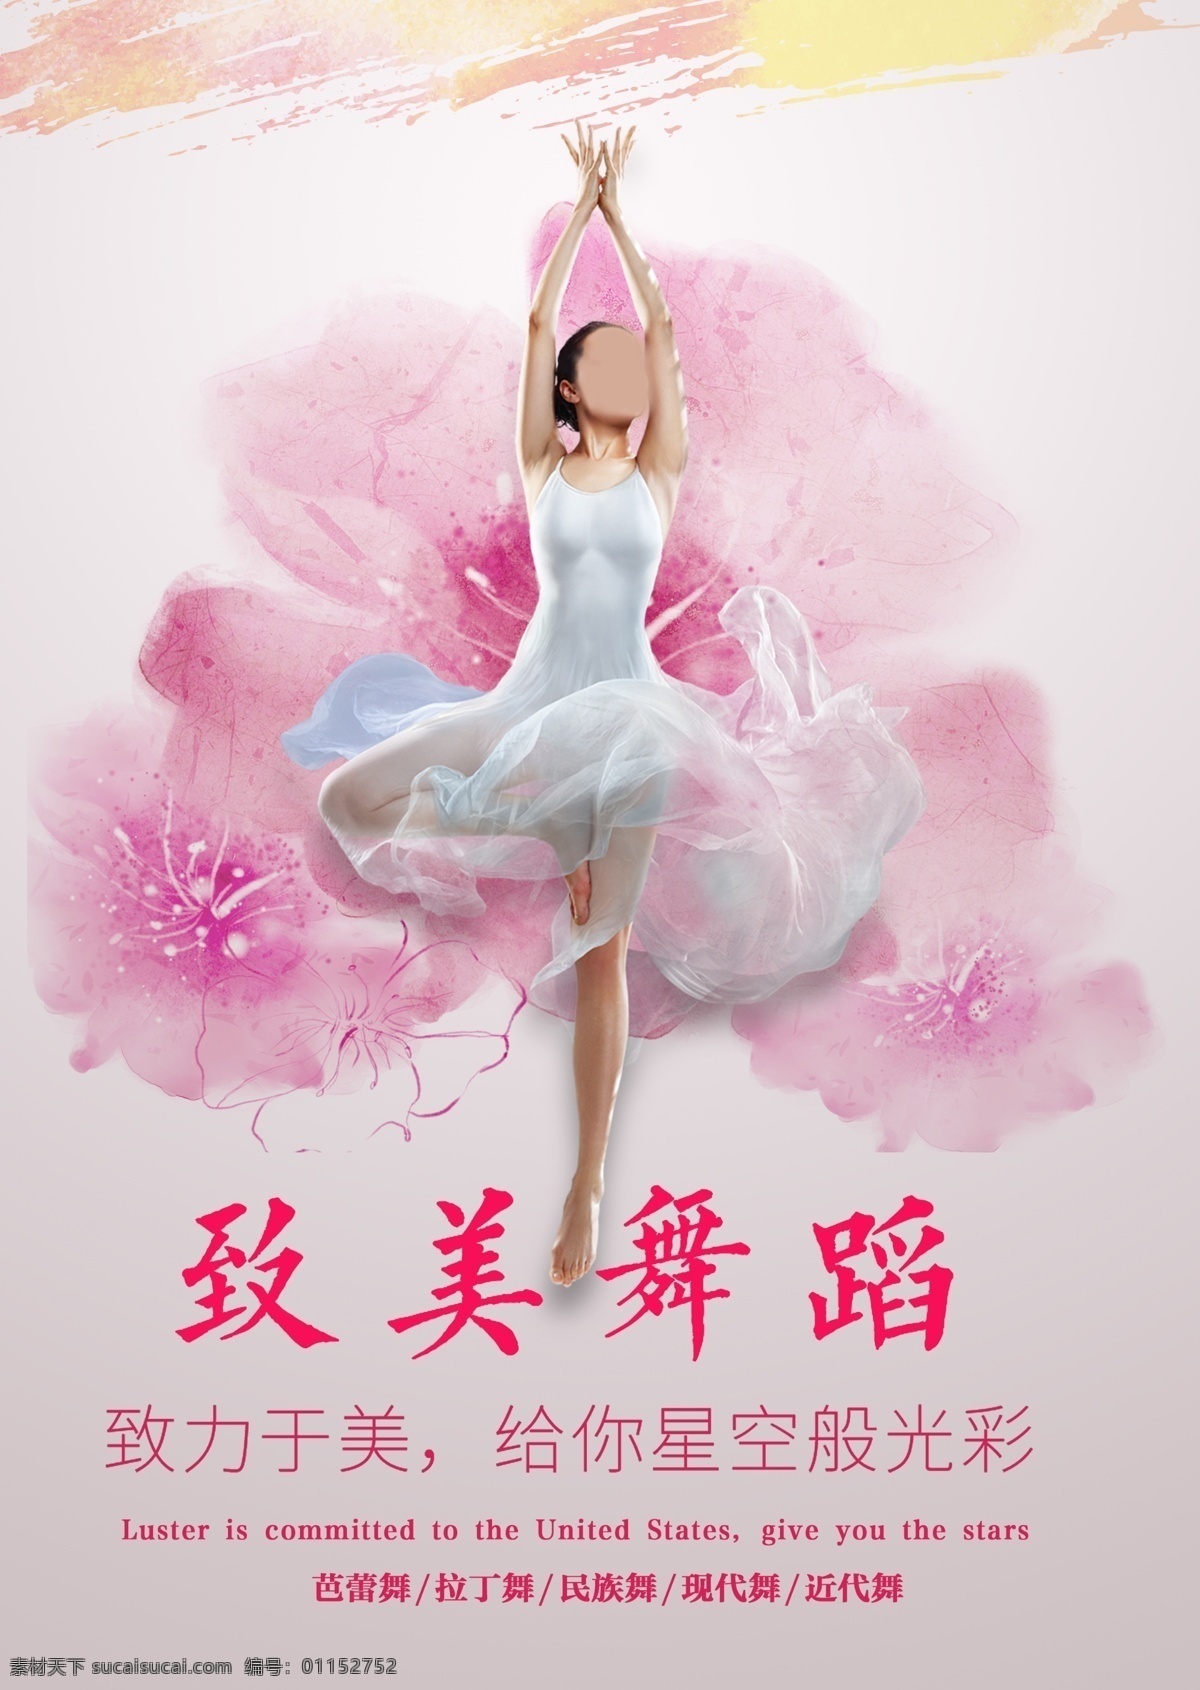 舞蹈 培训班 招生 海报 手绘 水墨 花 美女 跳舞 健身海报 唯美芭蕾 平面设计